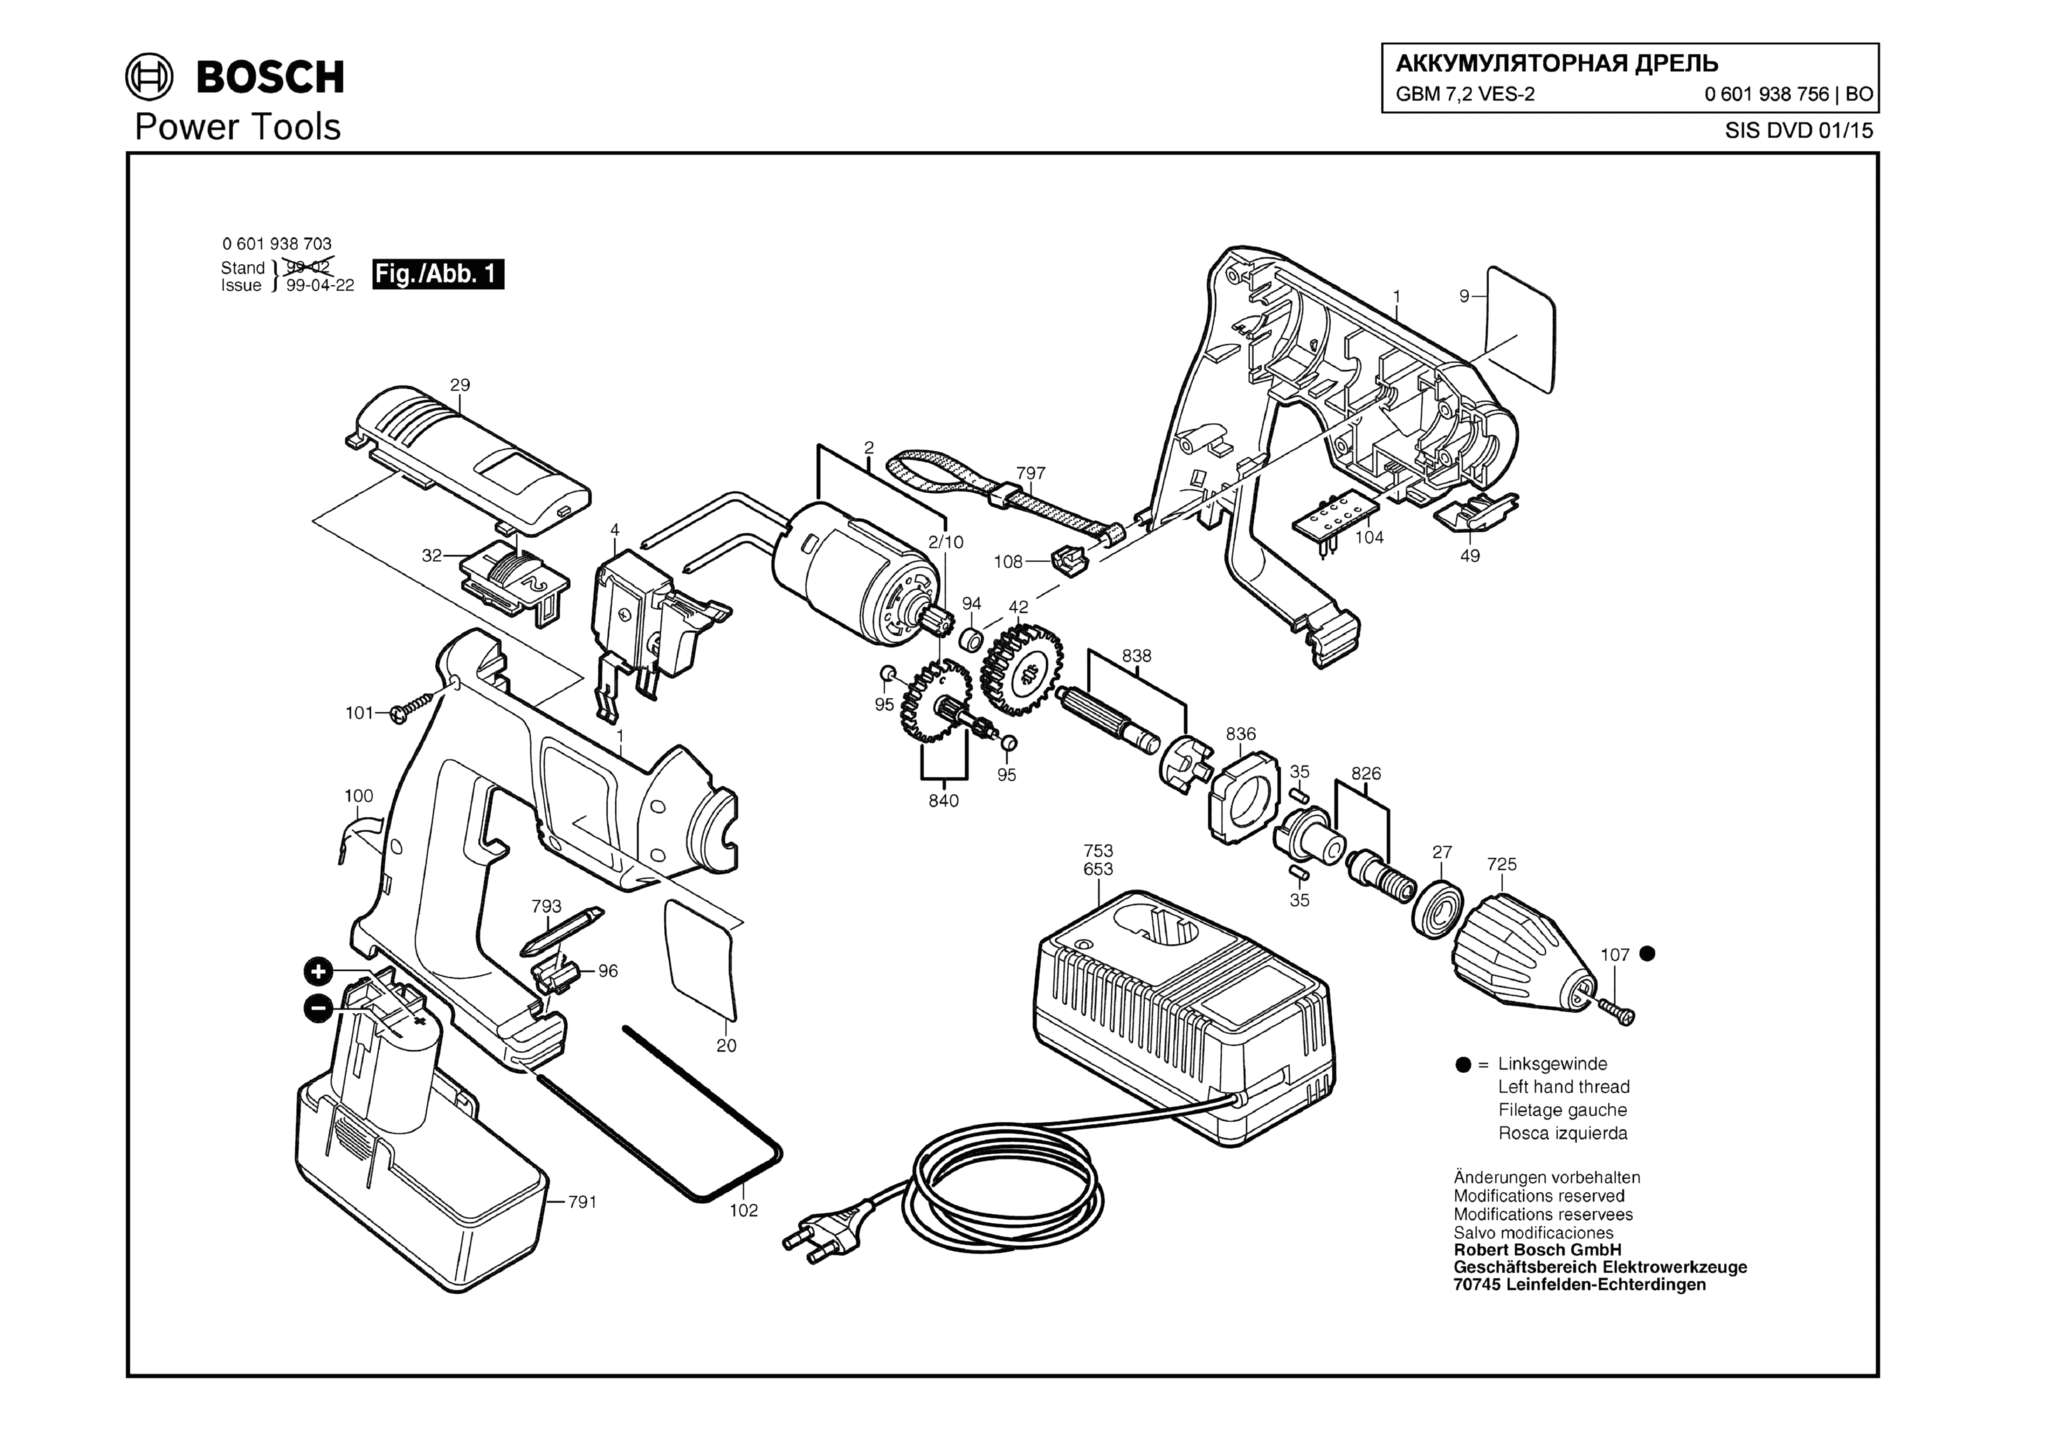 Запчасти, схема и деталировка Bosch GBM 7,2 VES-2 (ТИП 0601938756)